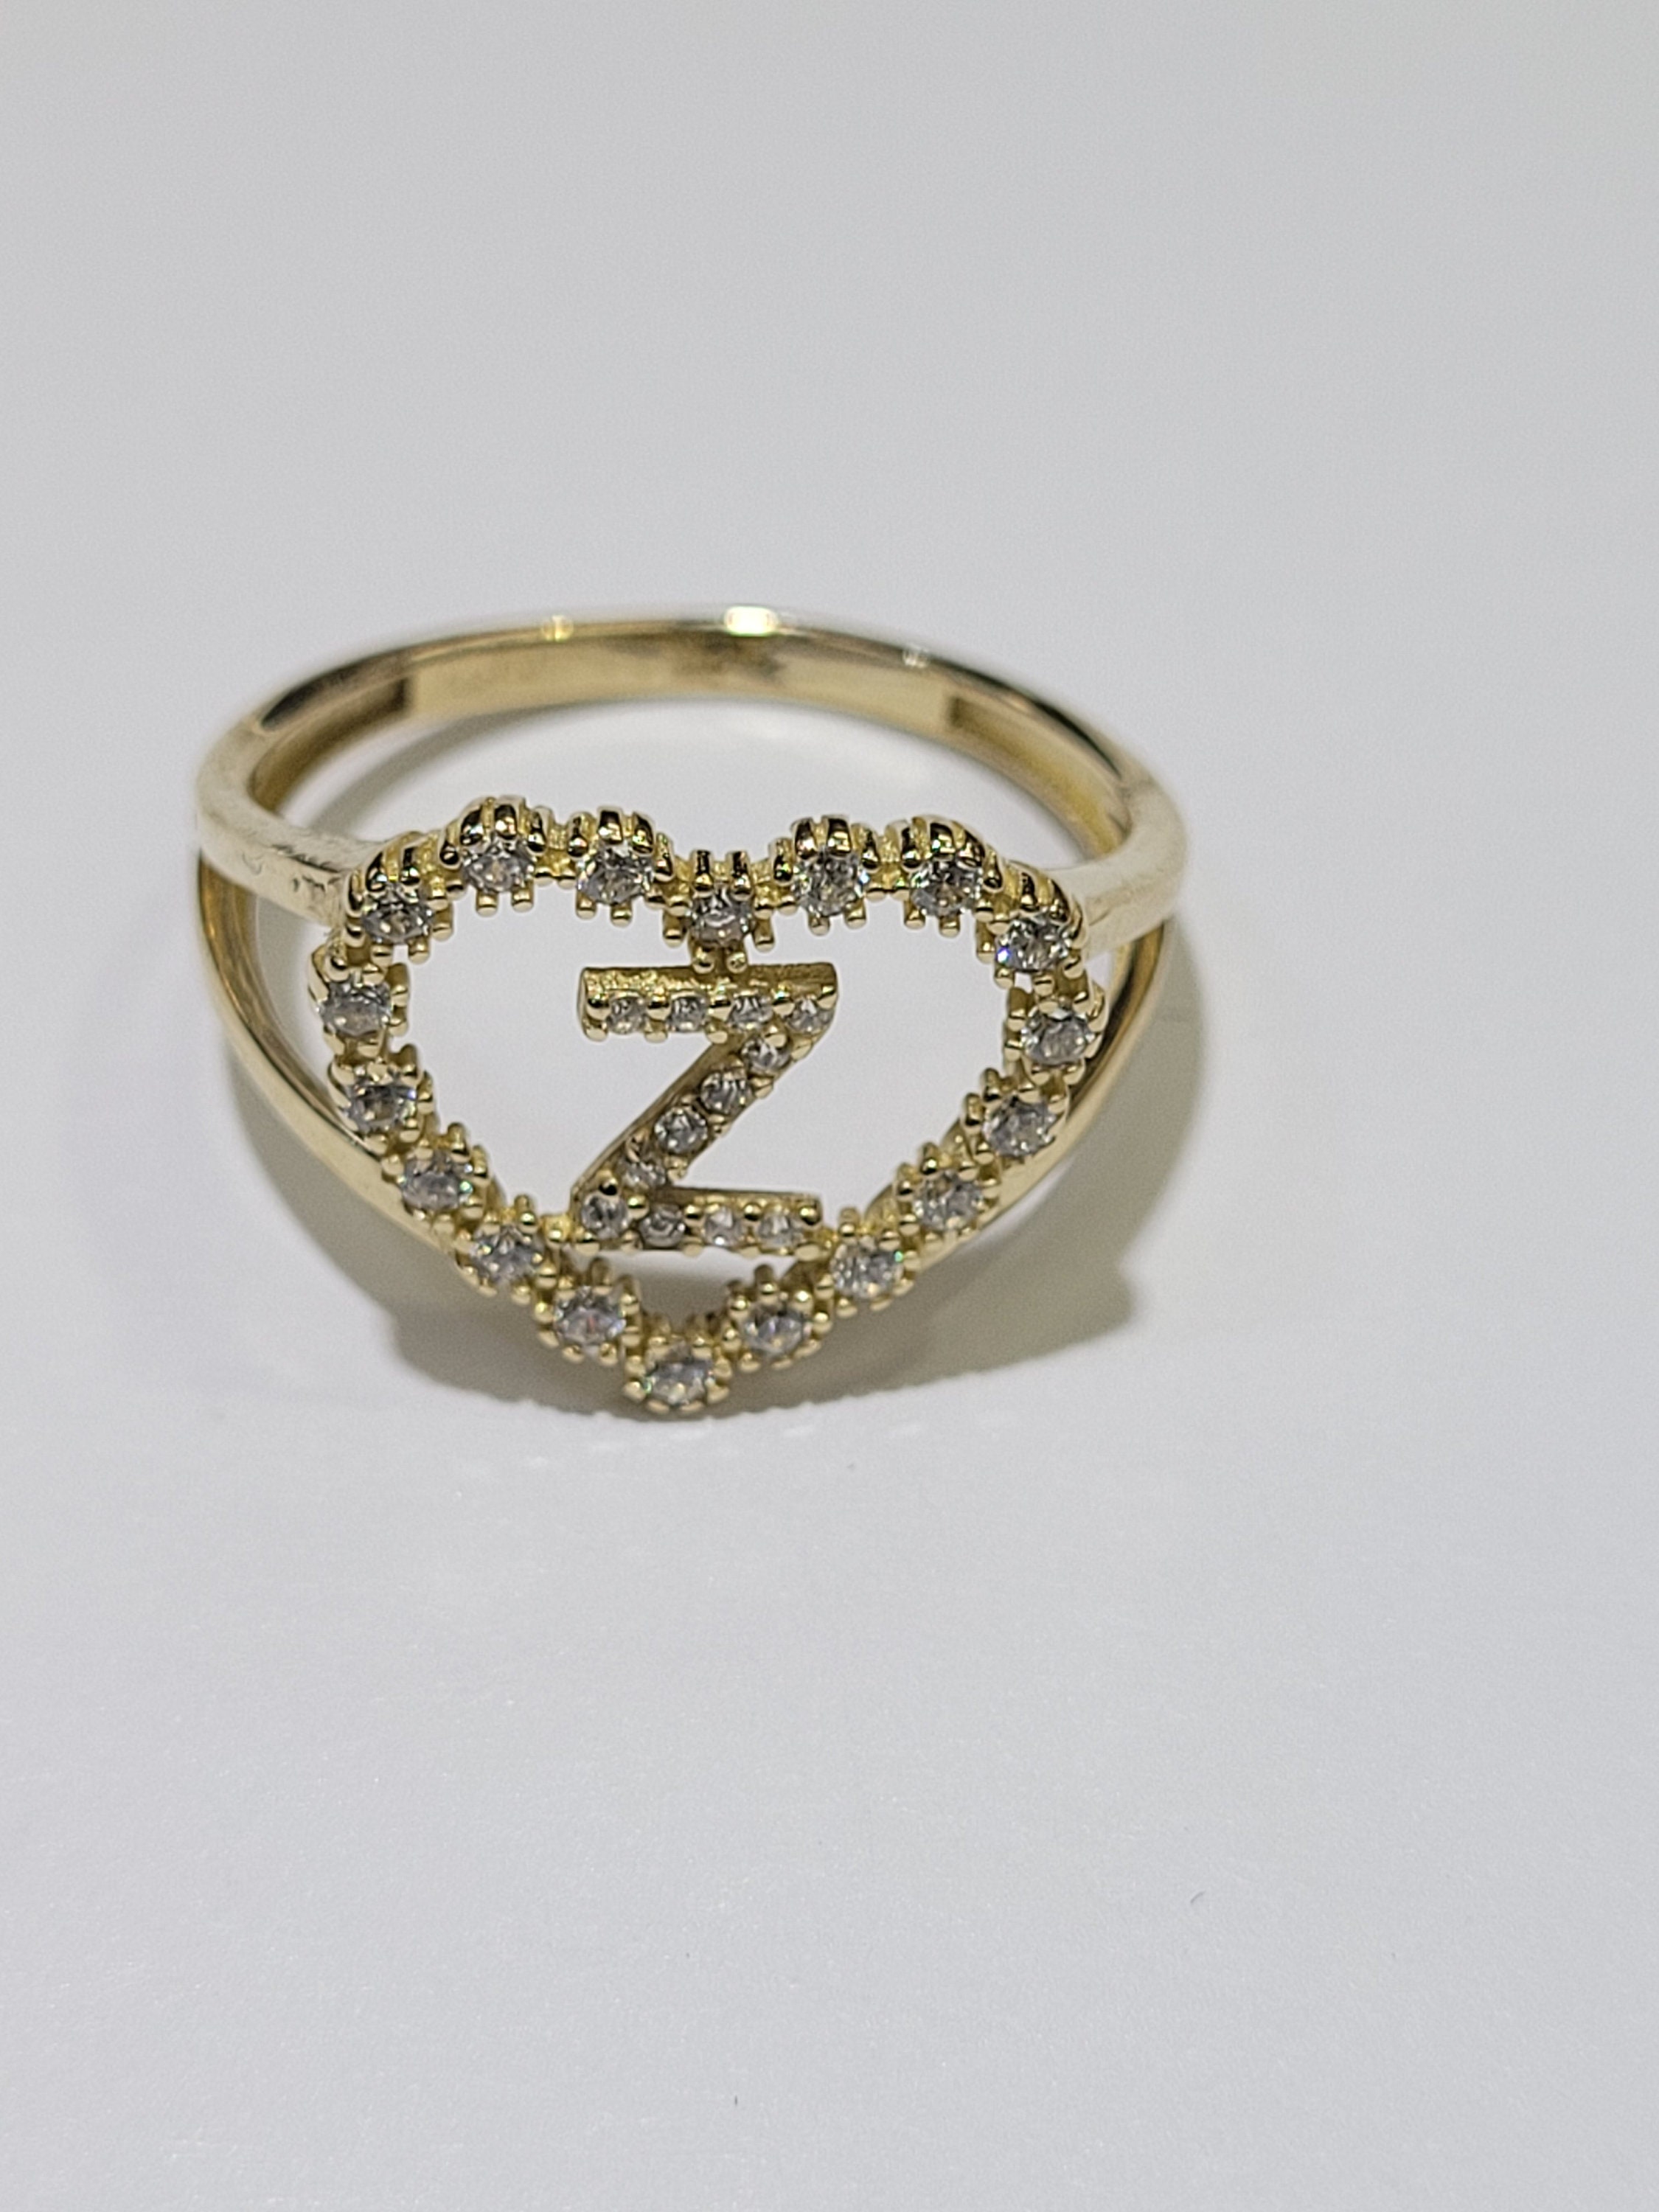 Why Not Give Me a Z-Ring Sometime? | Pokémon Wiki | Fandom